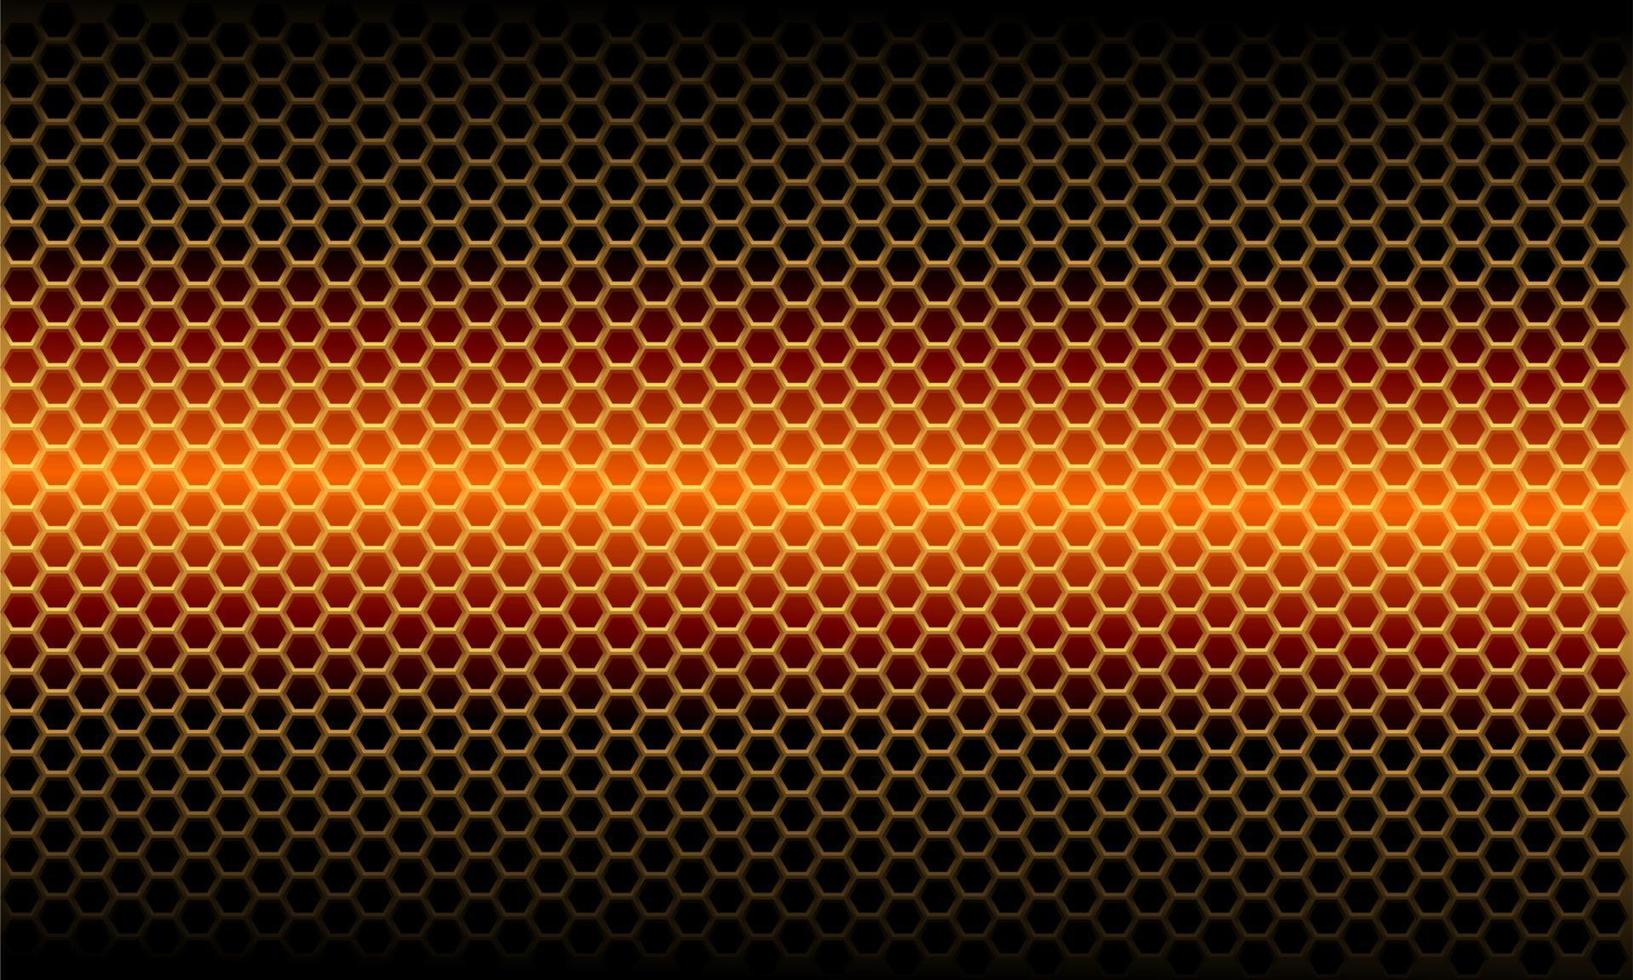 abstraktes orangefarbenes hellmetallisches Sechseck-Netzmuster auf moderner futuristischer Hintergrundvektorillustration des schwarzen Entwurfs. vektor